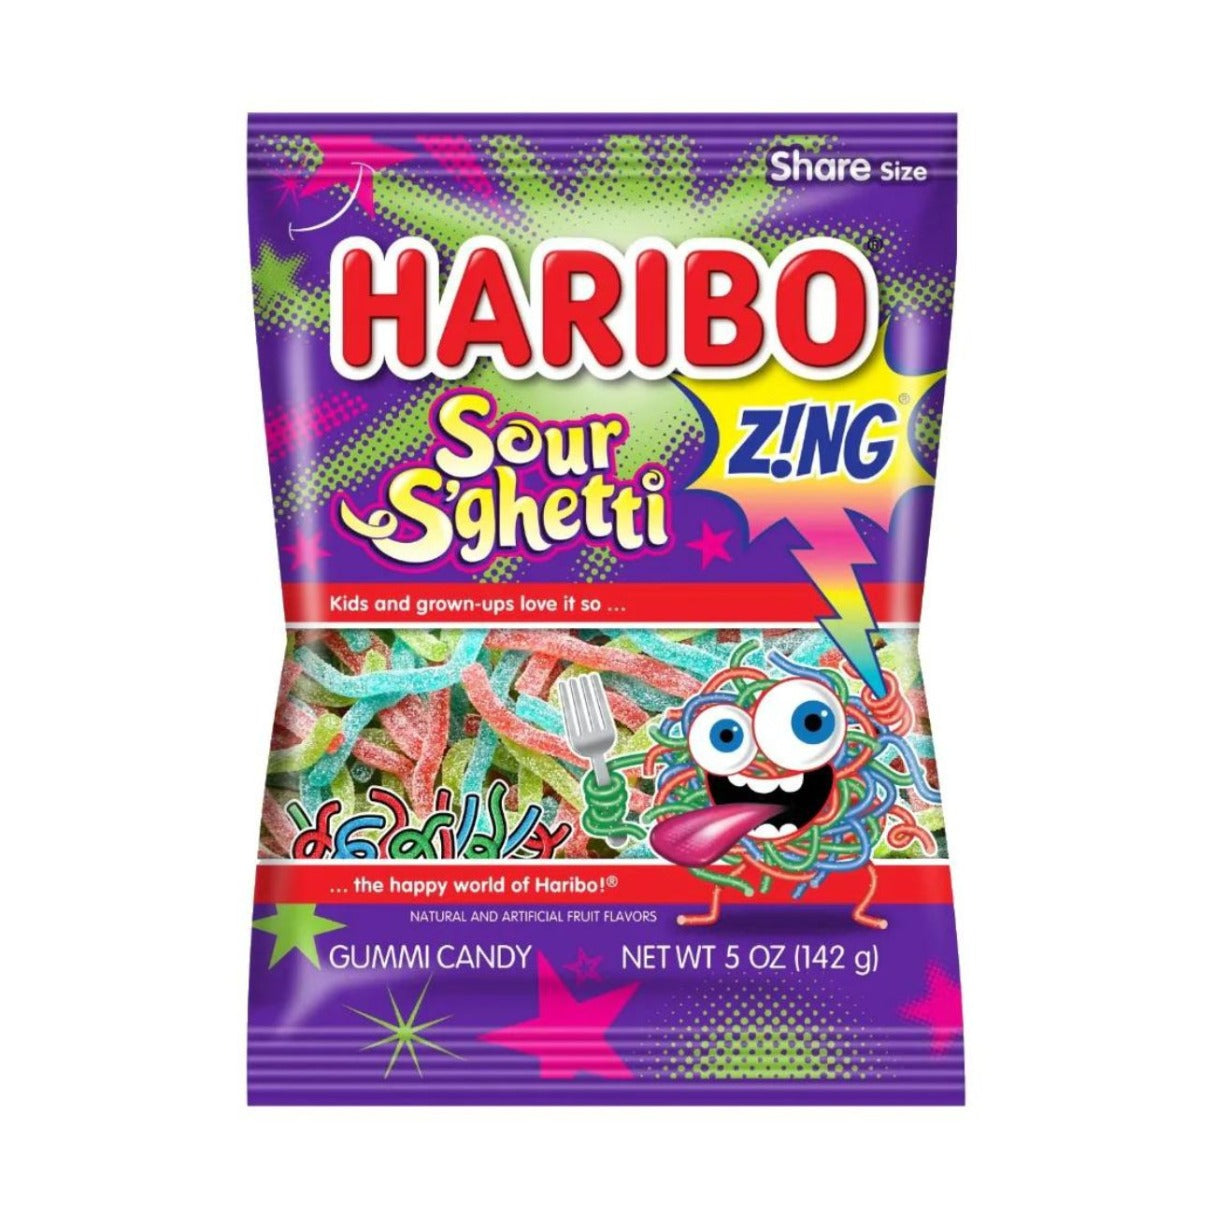 Haribo Sour S'Ghetti Gummi Candy 5oz - 12ct